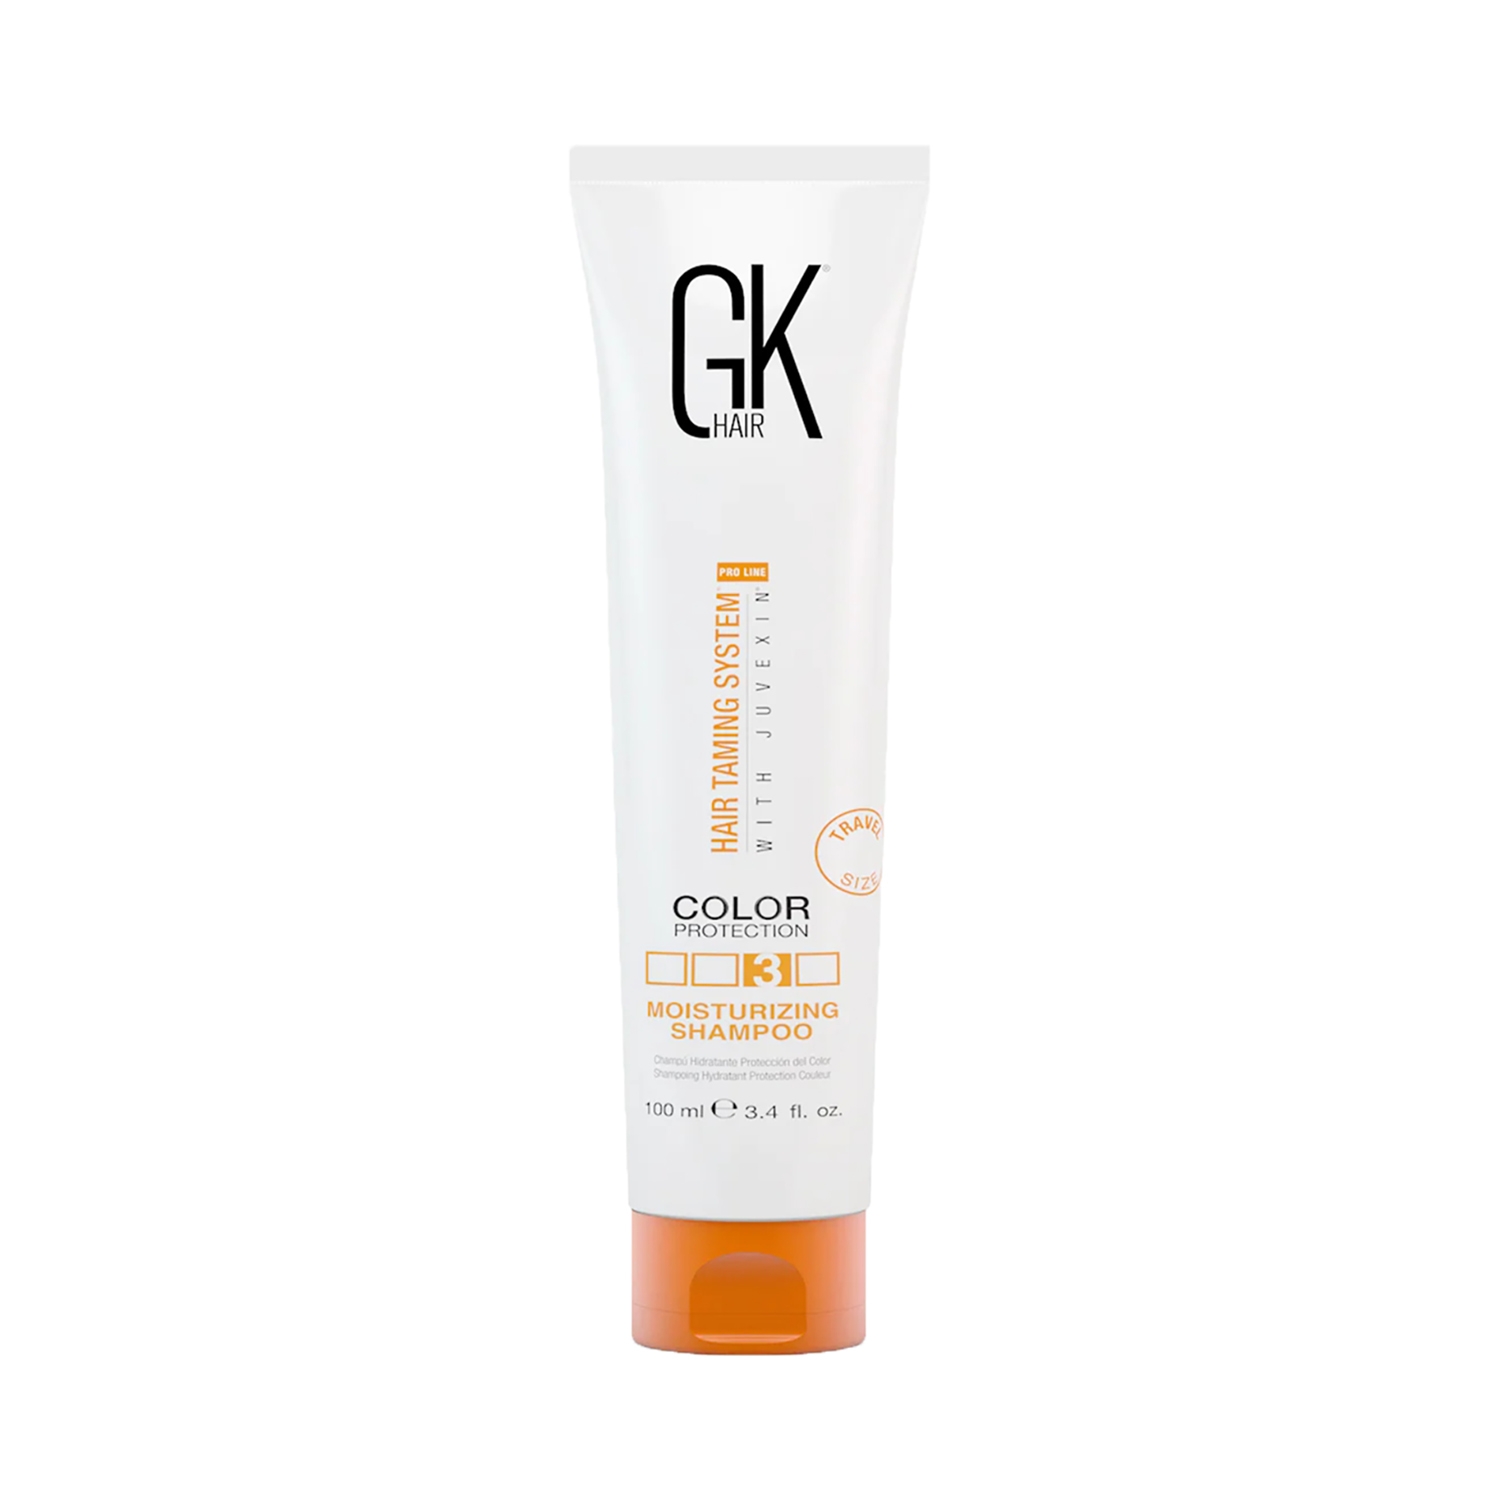 GK Hair | GK Hair Moisturizing Shampoo Color Protection (100ml)